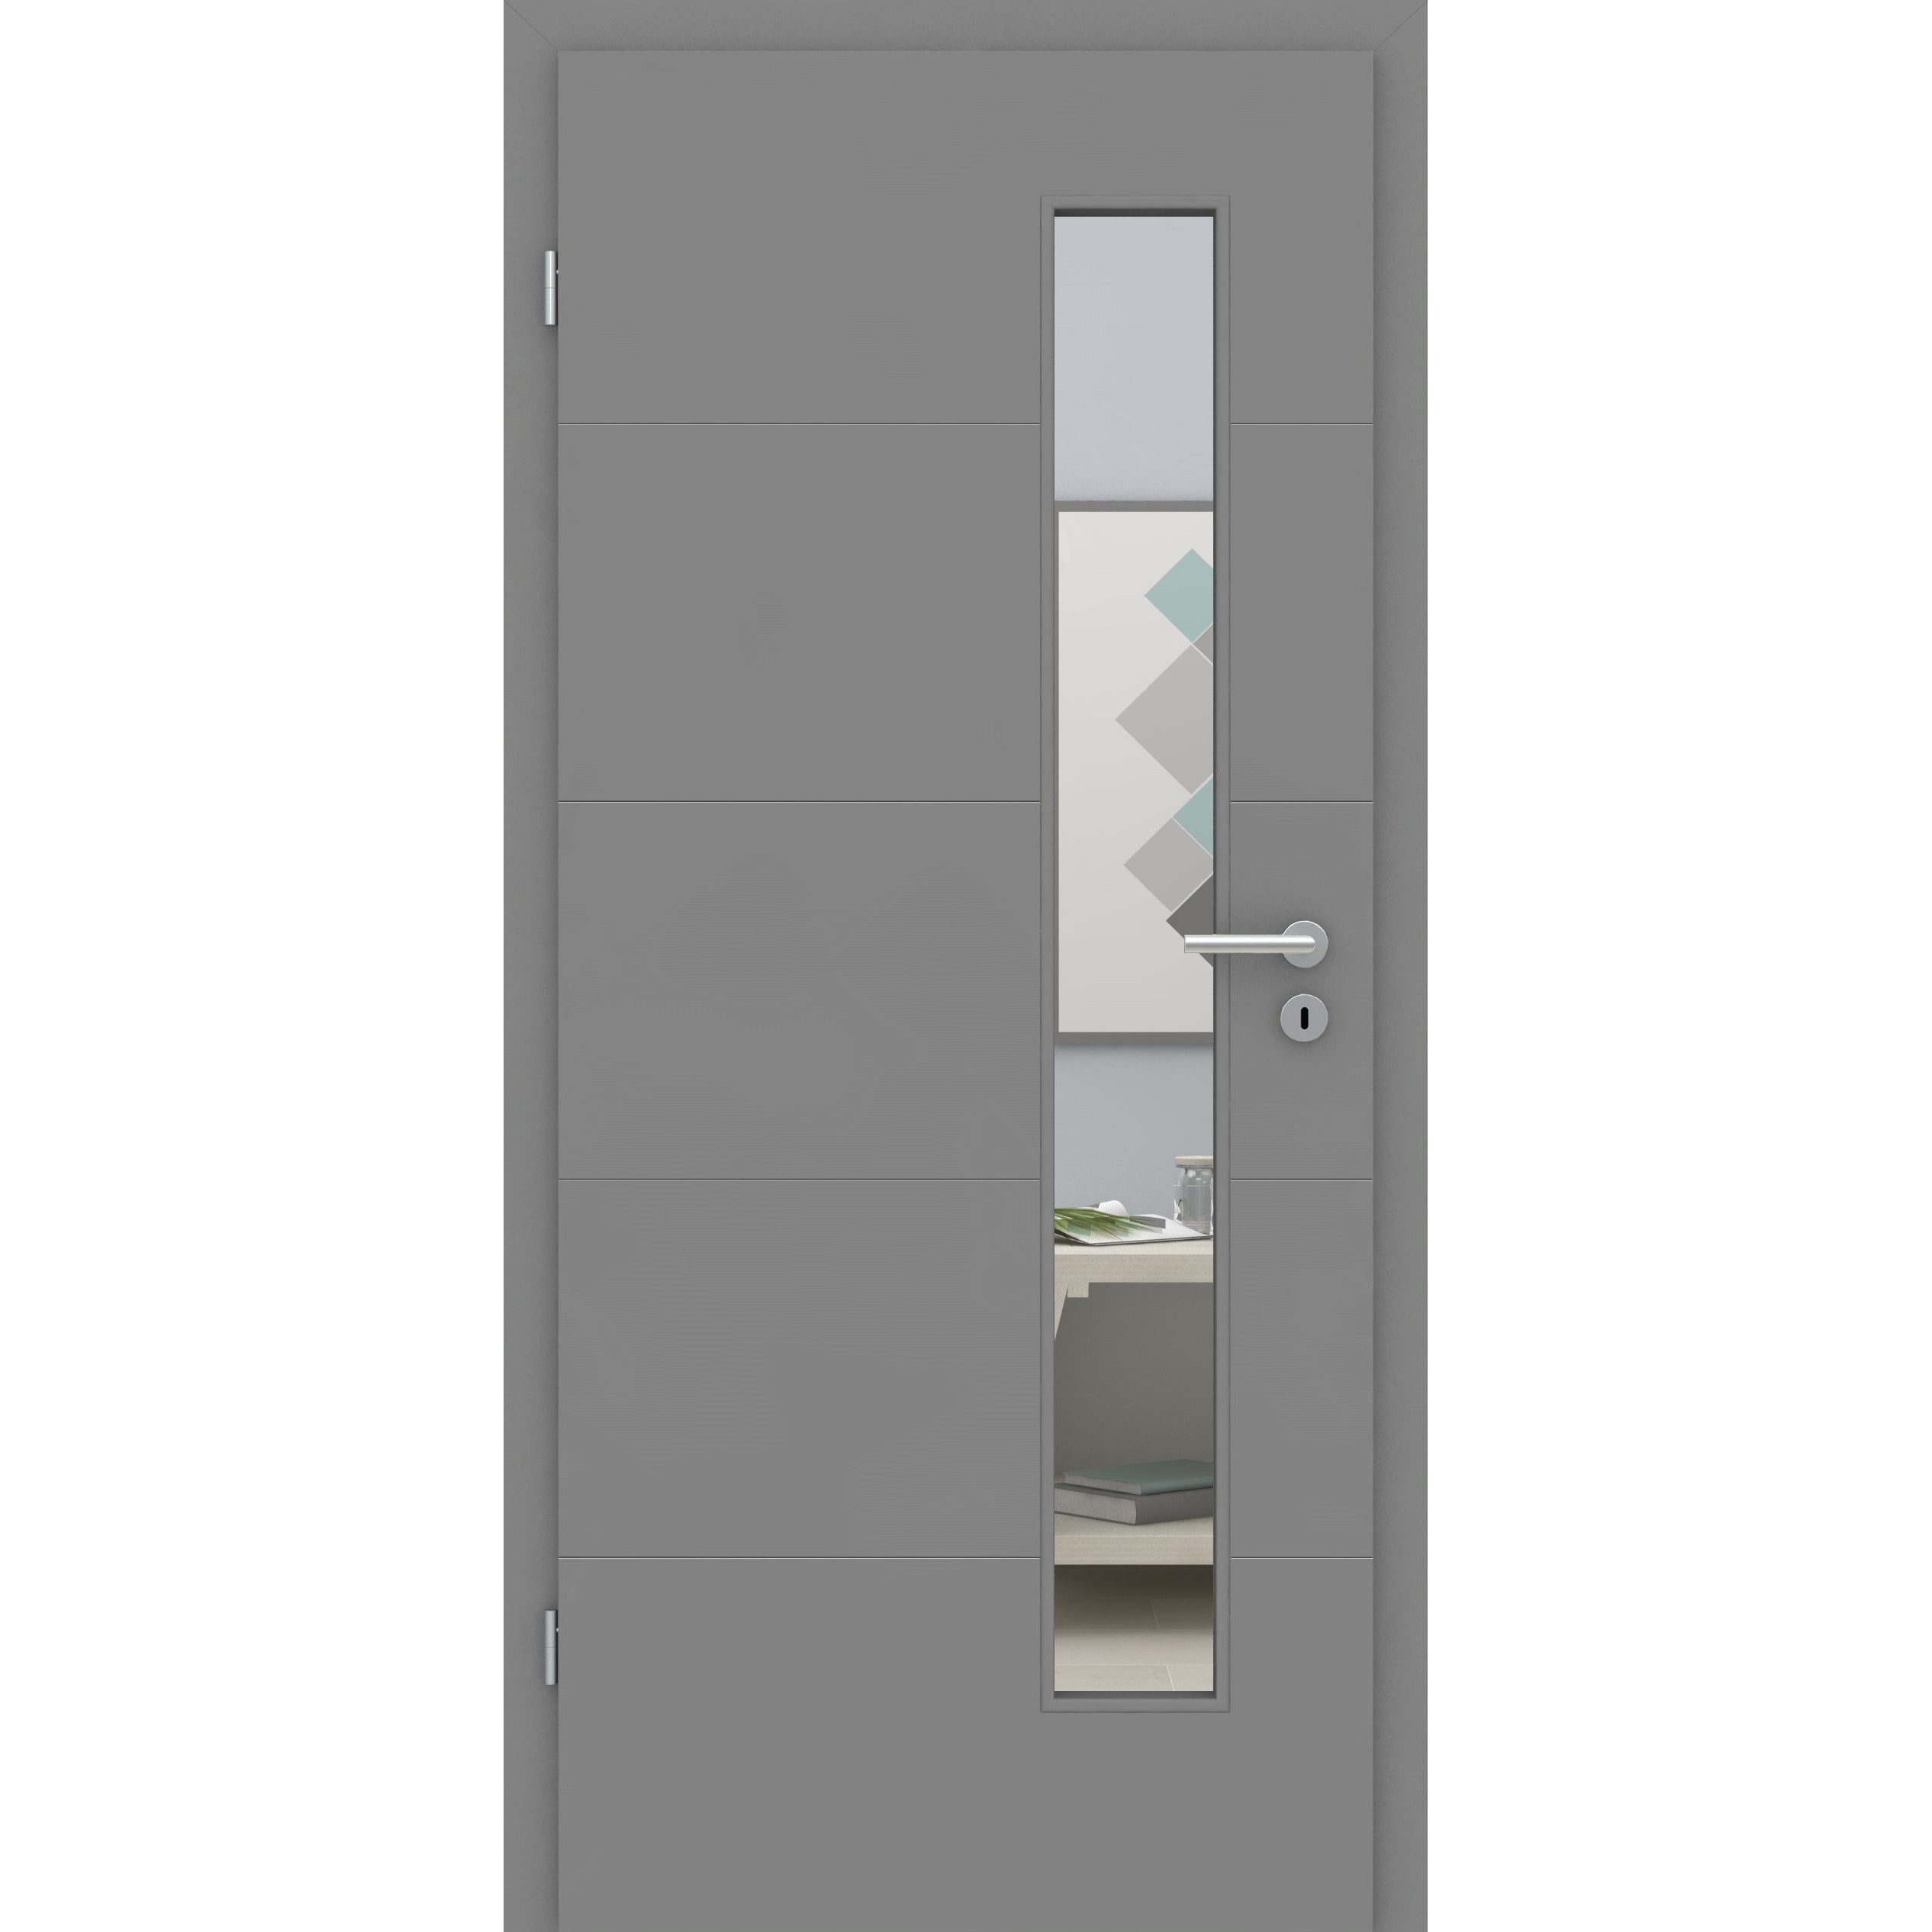 Zimmertür mit Zarge und Lichtausschnitt grau 4 Rillen quer Designkante - Modell Designtür Q47LAS